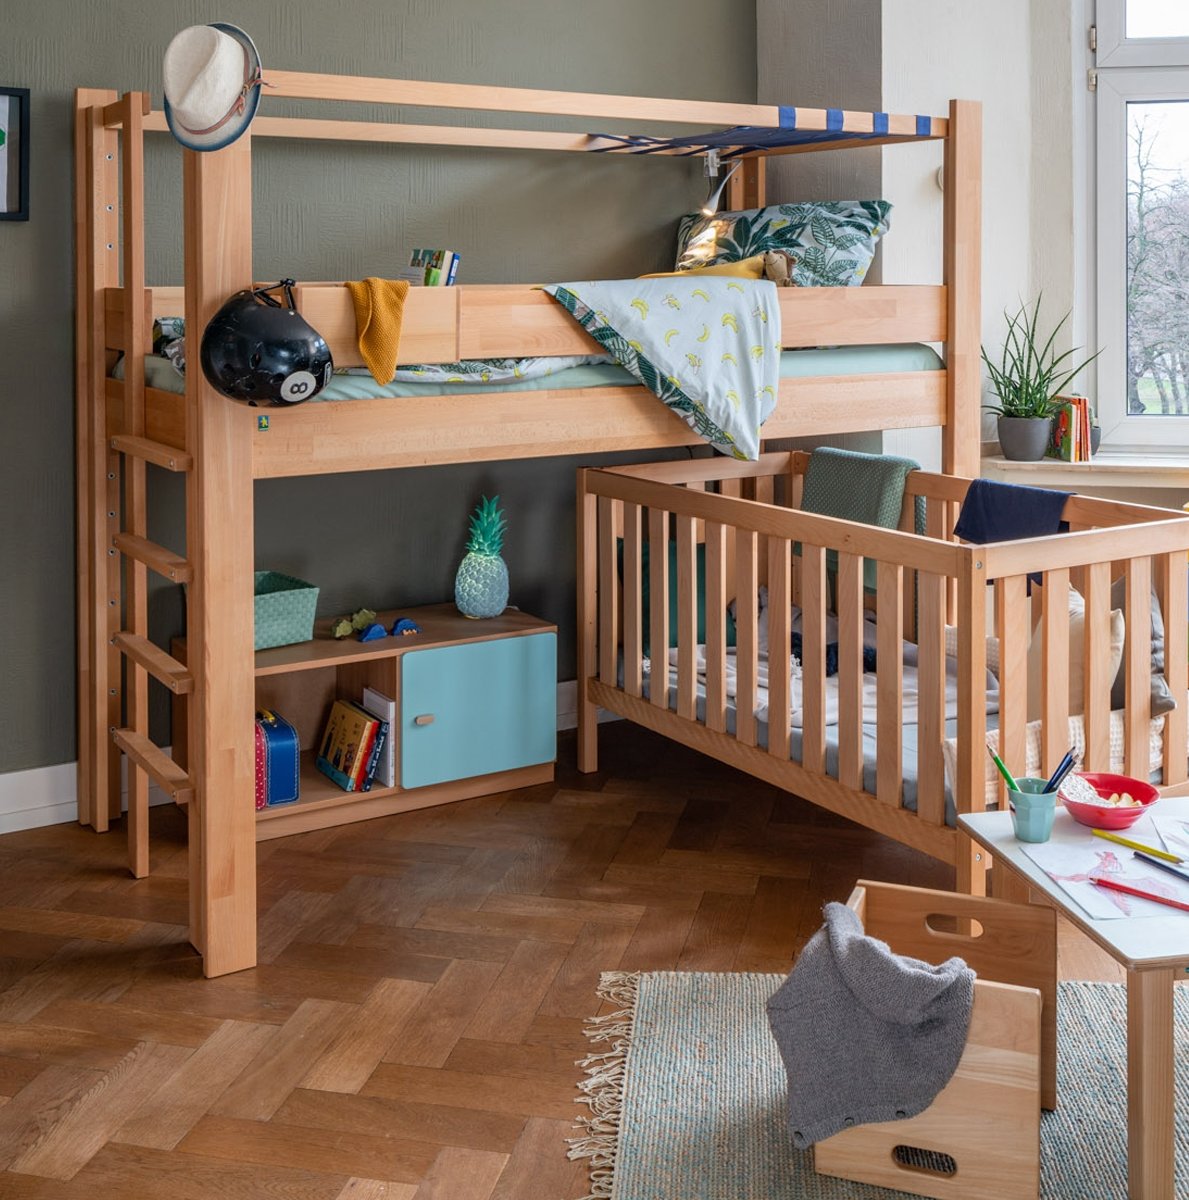 Vorhang Bettvorhang Vorhangstoff für Kinderbett Etagenbett Hochbett 3  teilig kaufen bei